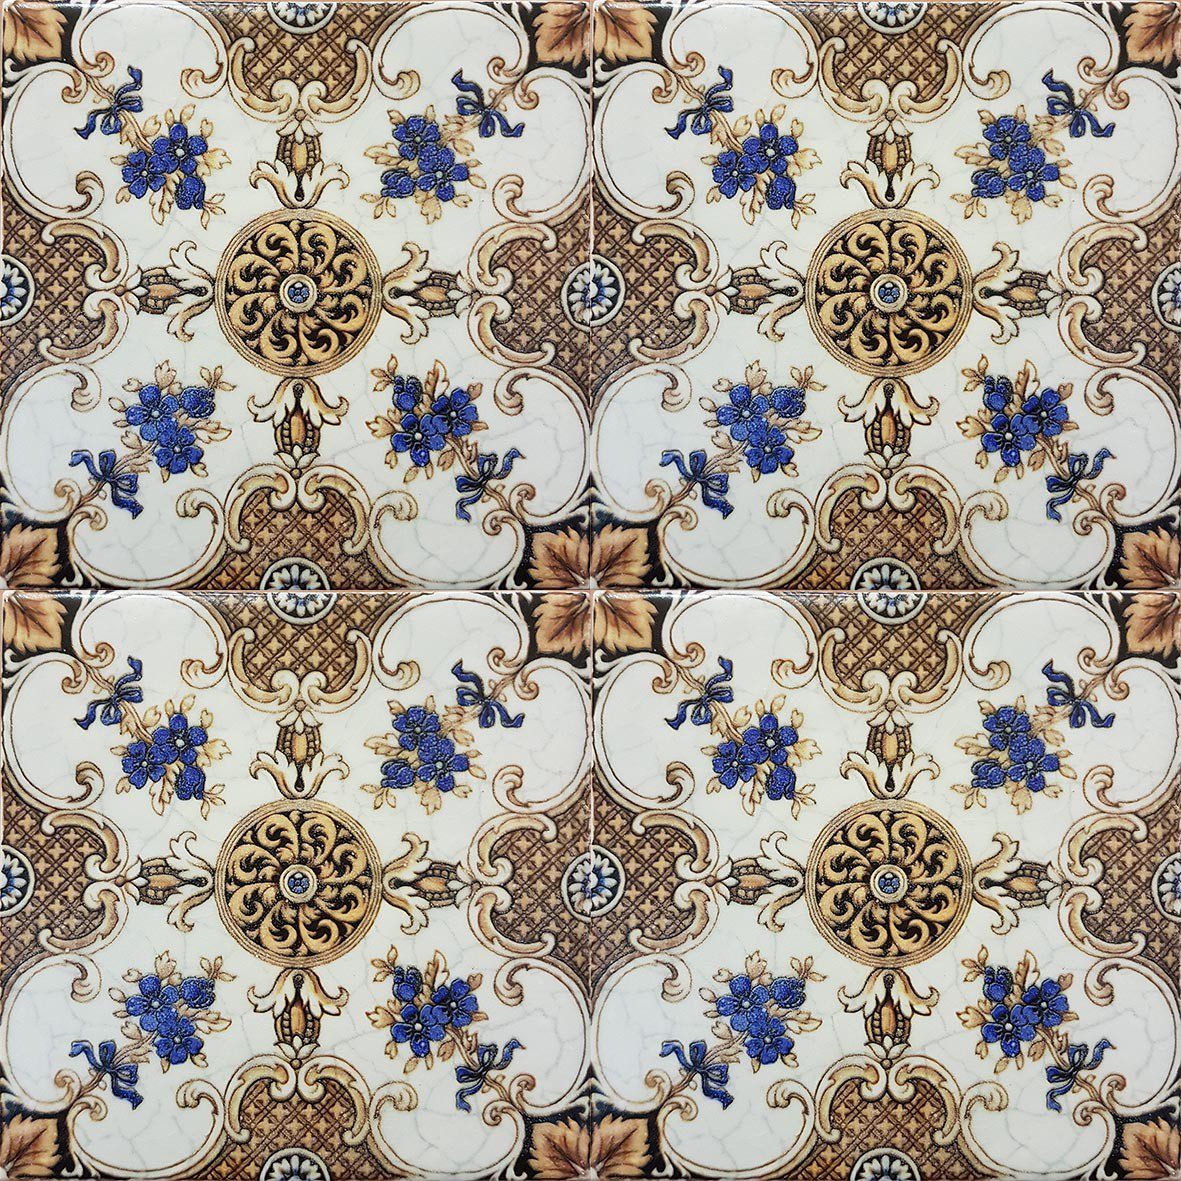 Floral Victorian Tiles together